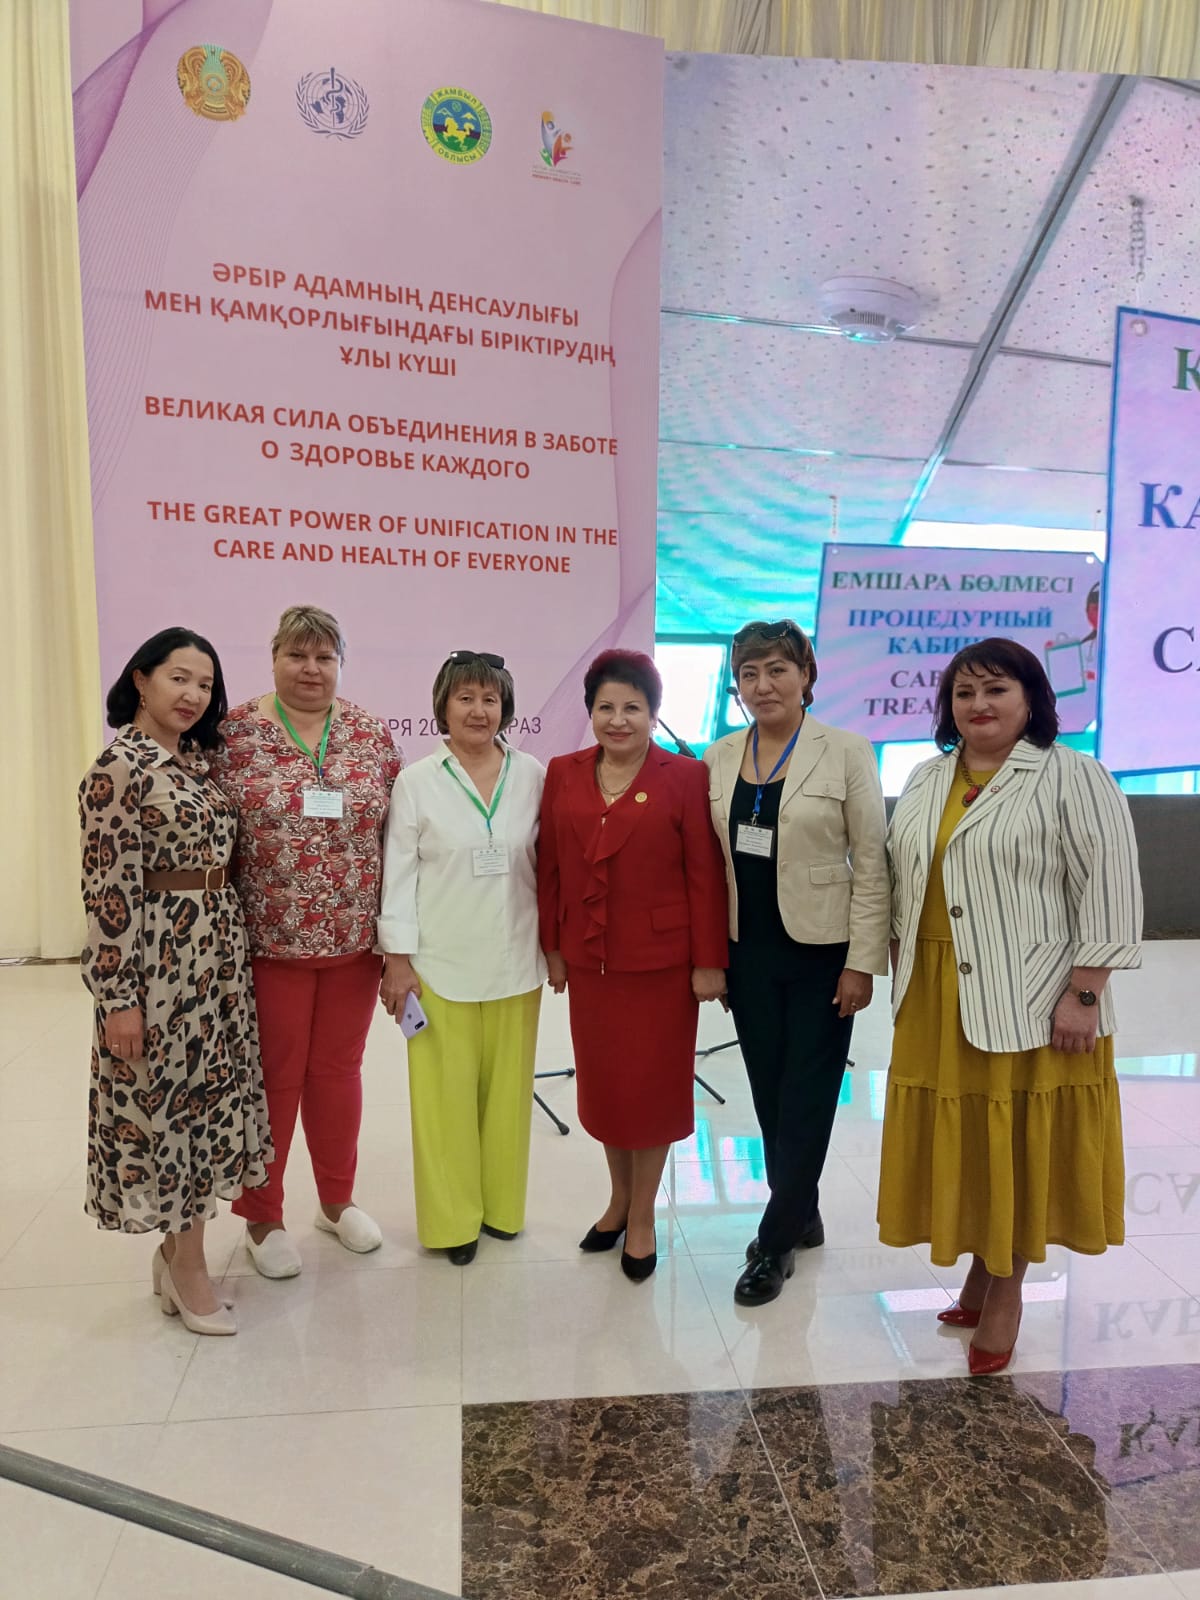 Медицинские сестры России поделились успехами развития сестринского дела в первичном звене на крупнейшей международной конференции в Казахстане